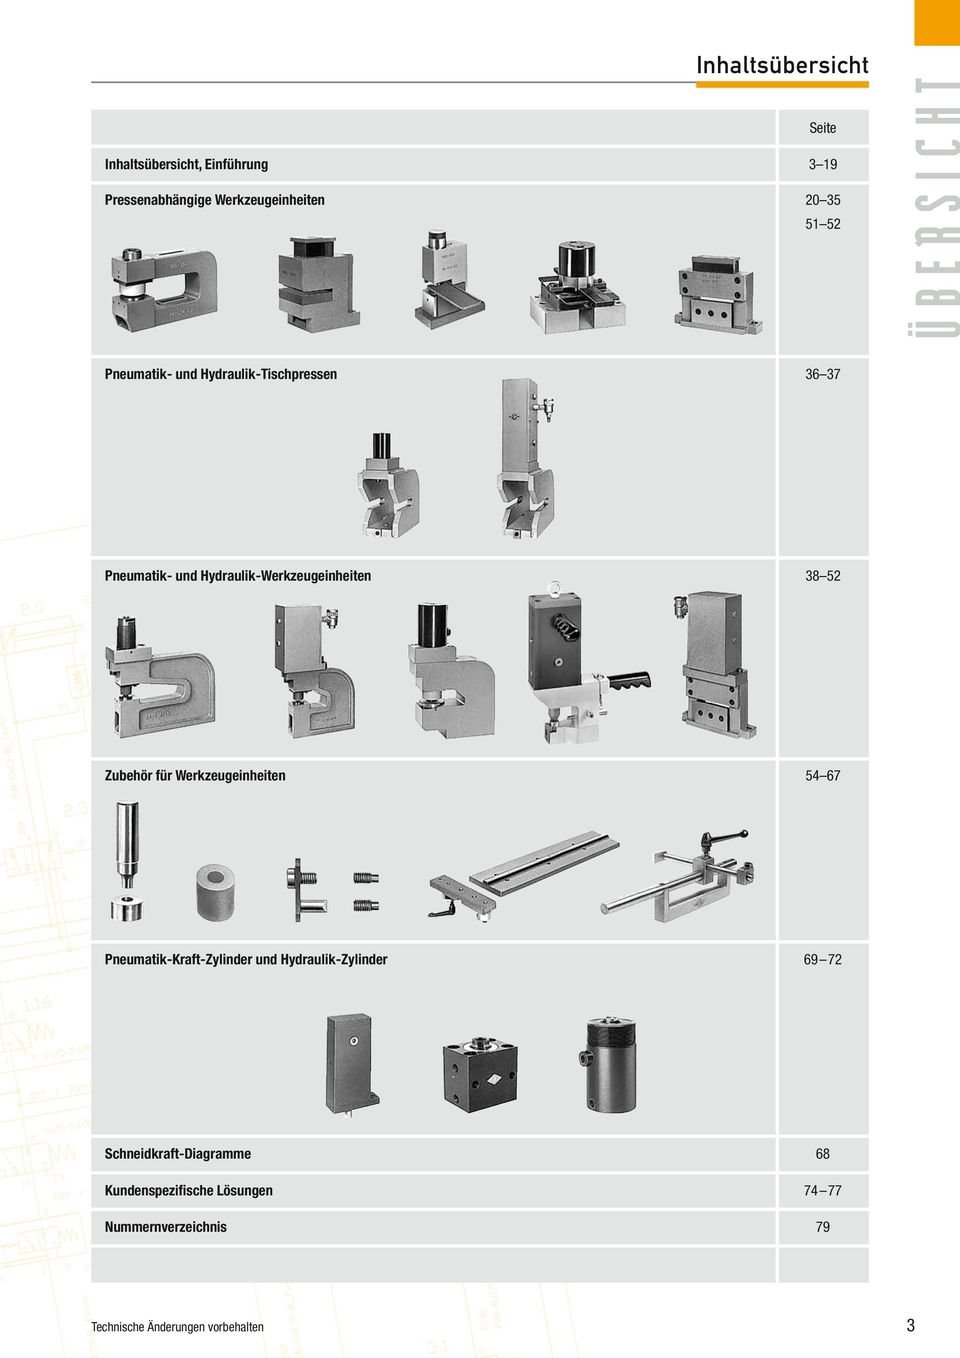 Hydraulik-Werkzeugeinheiten 38 52 Zubehör für Werkzeugeinheiten 54 67